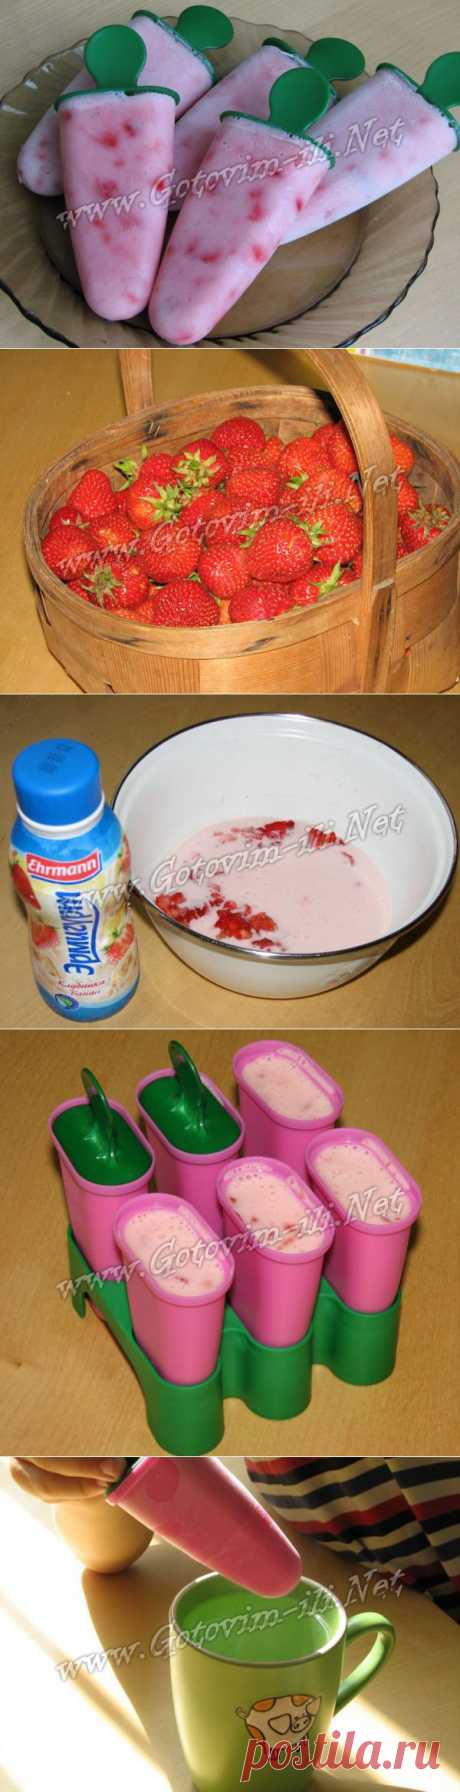 Клубничное мороженое | Рецепты на любой вкус